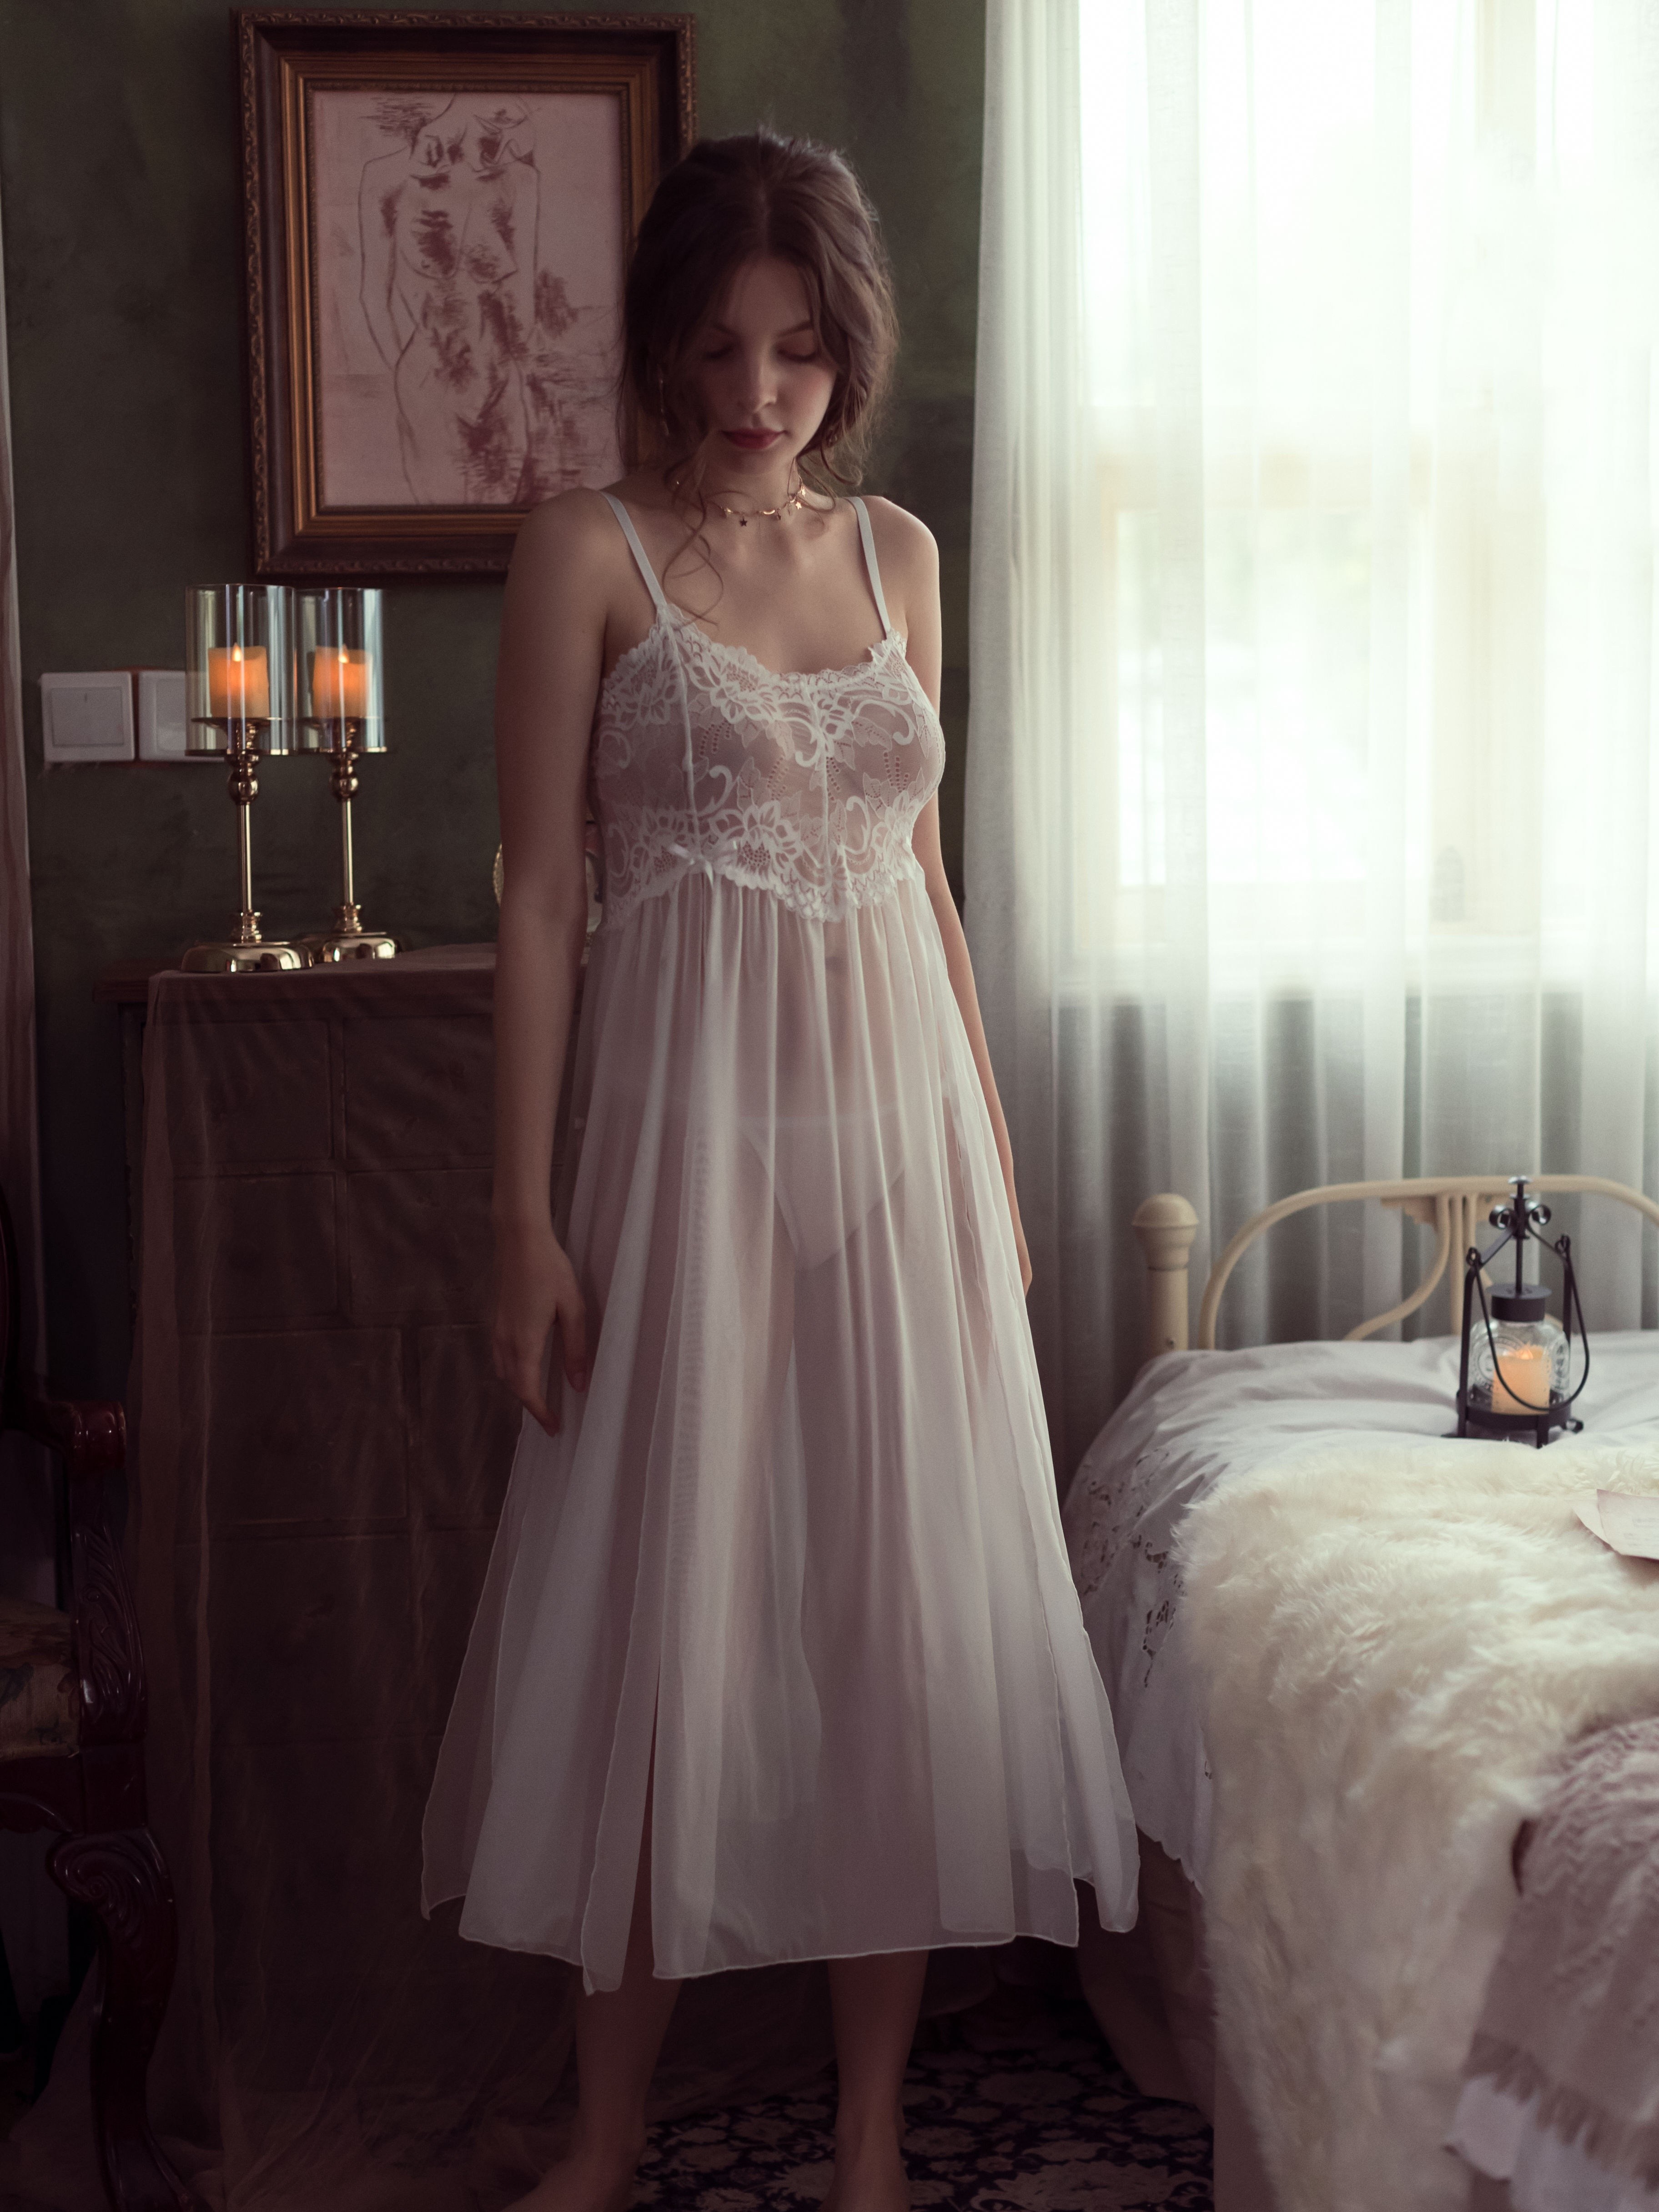 Semi-transparent lingerie dress - Woman